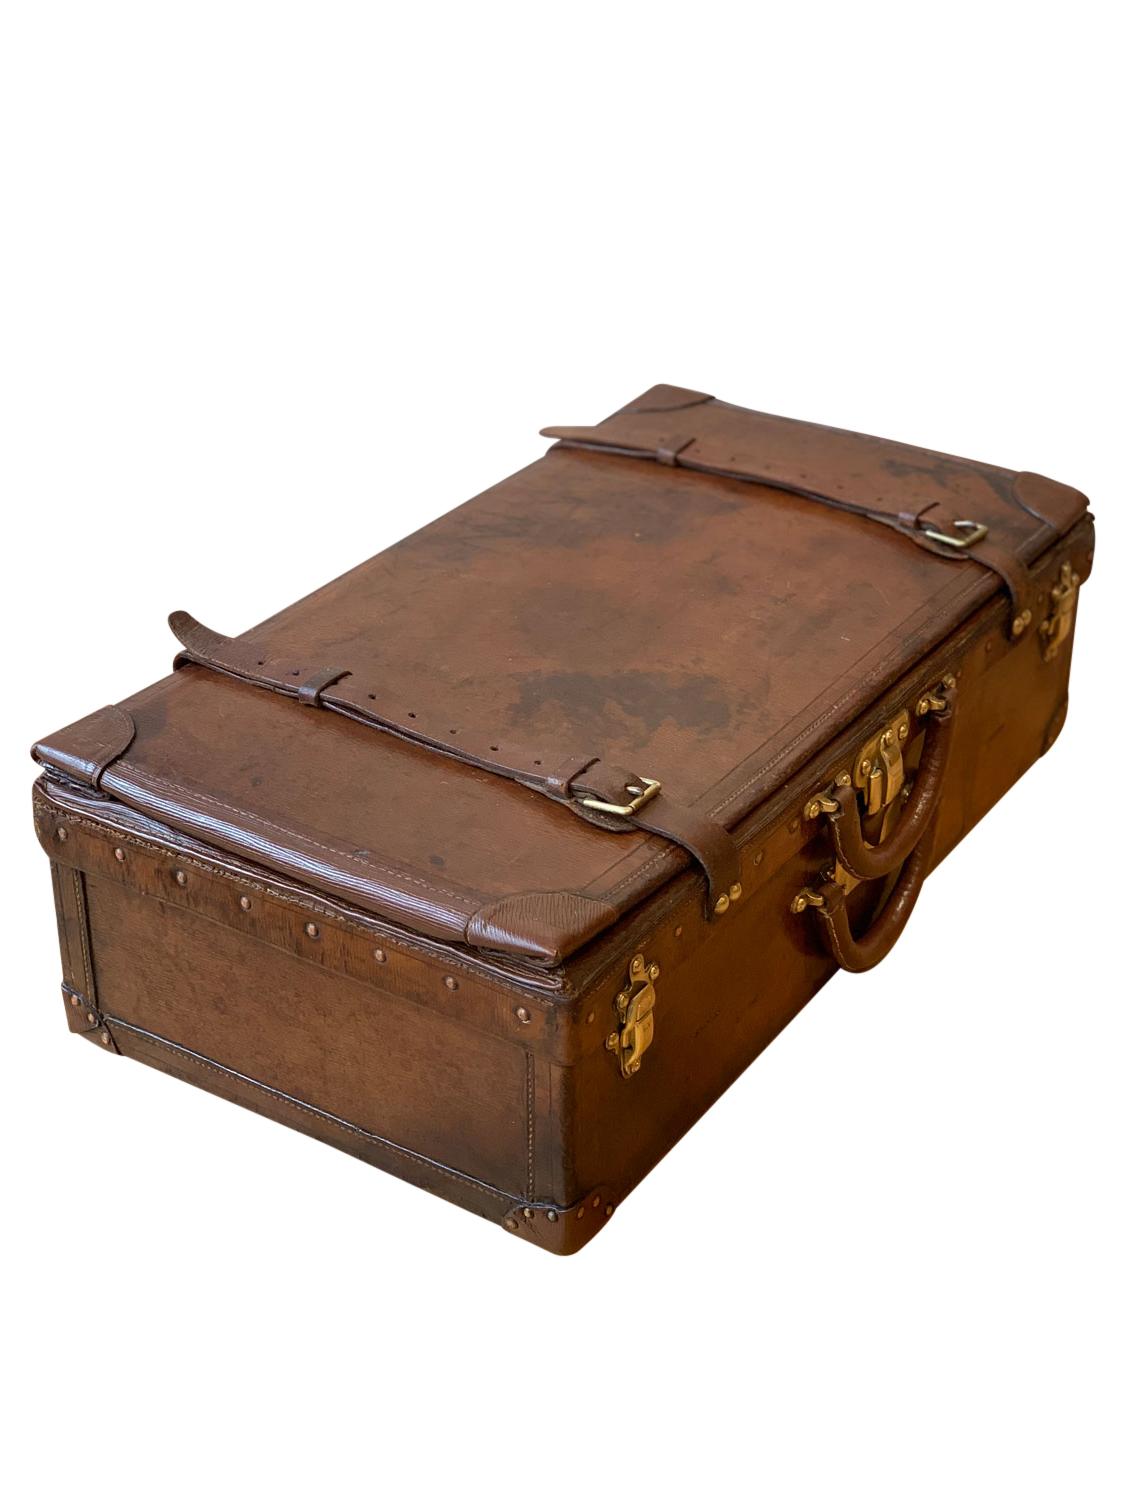 Louis Vuitton Expandable Suitcase, circa 1908 For Sale 1